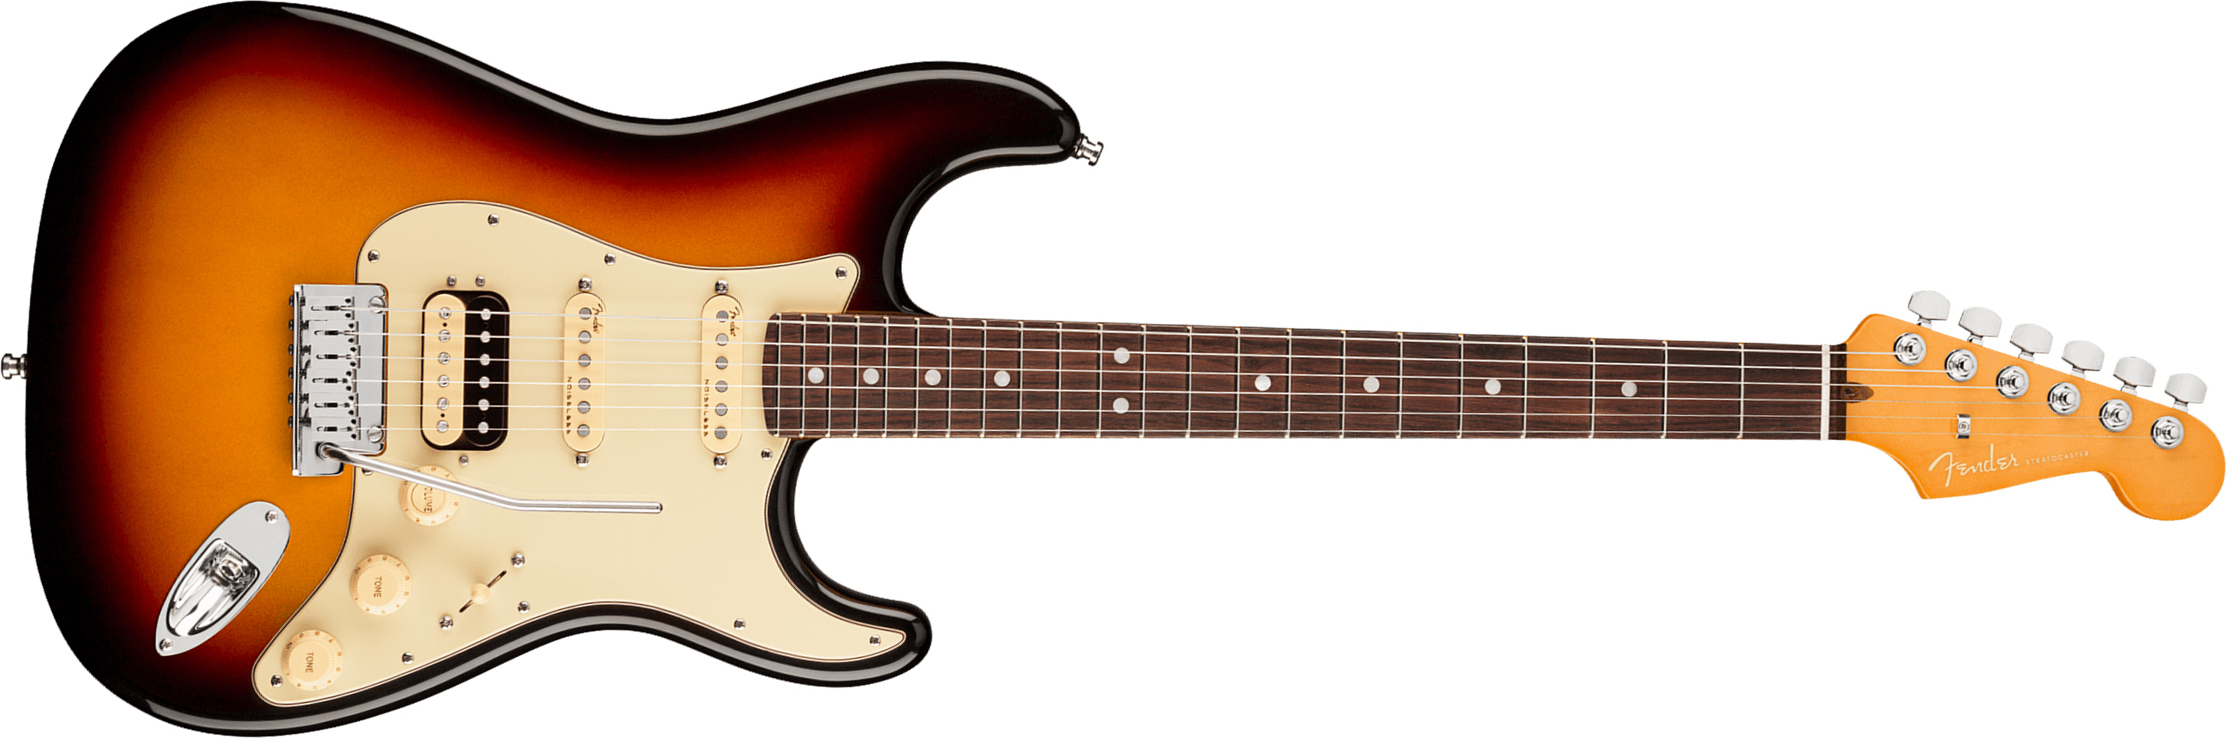 Fender Strat American Ultra Hss 2019 Usa Rw - Ultraburst - Elektrische gitaar in Str-vorm - Main picture